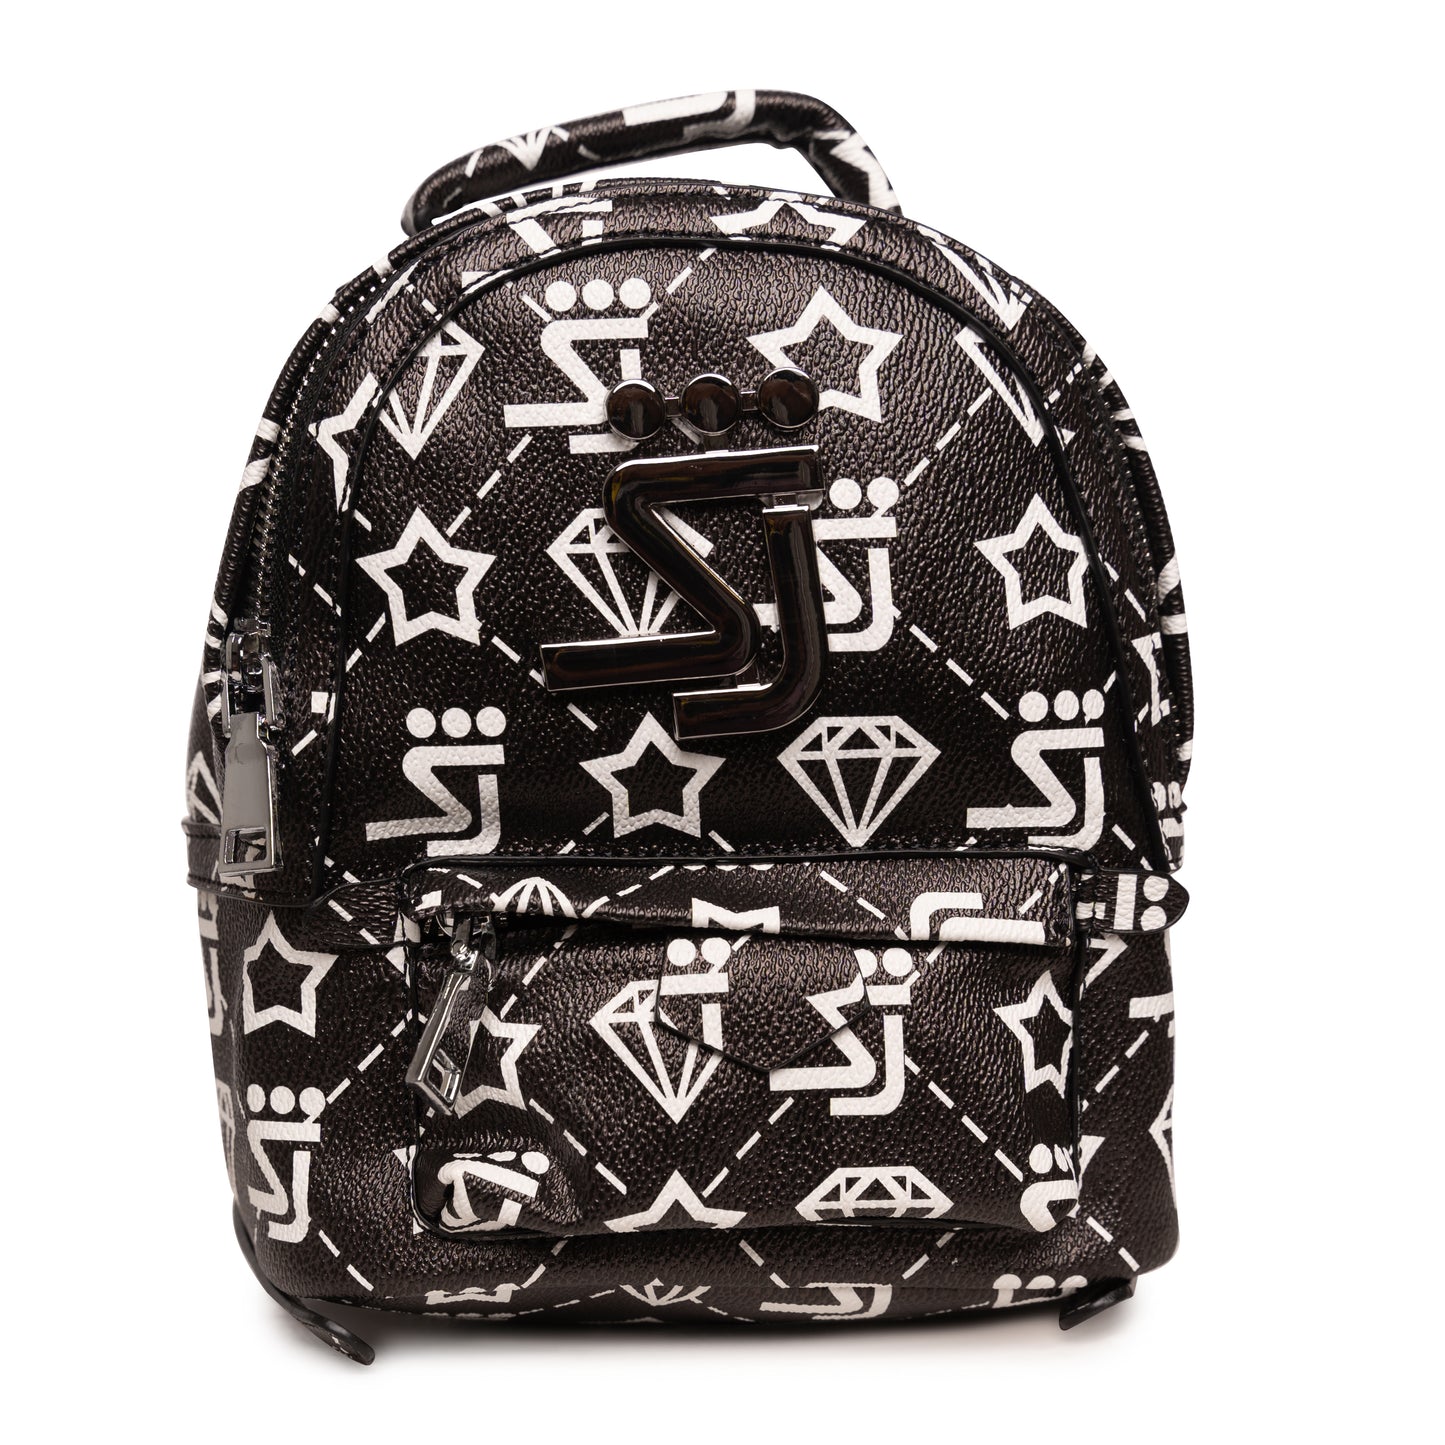 SJ Monogram Backpack Black